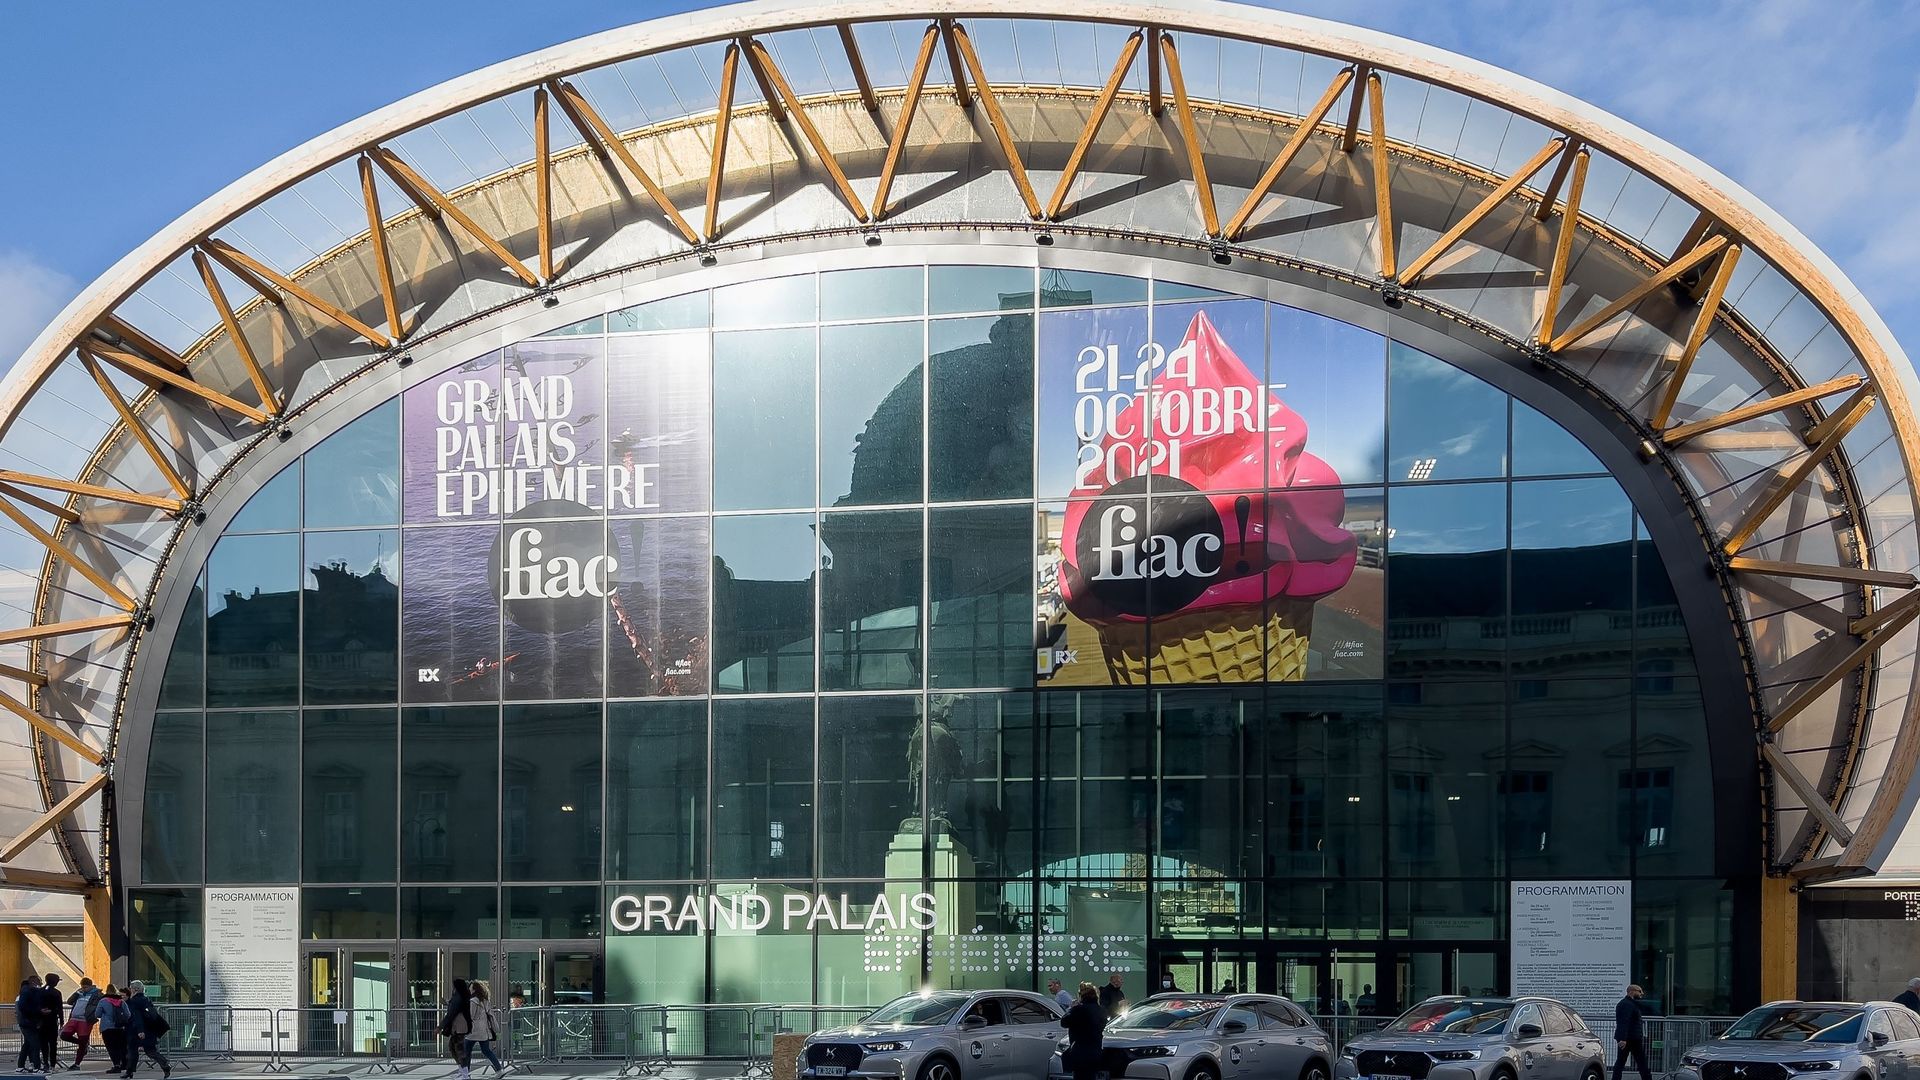 Vue générale du bâtiment "Grand palais Ephemere" lors de la FIAC 2021 – Foire internationale d’art contemporain.